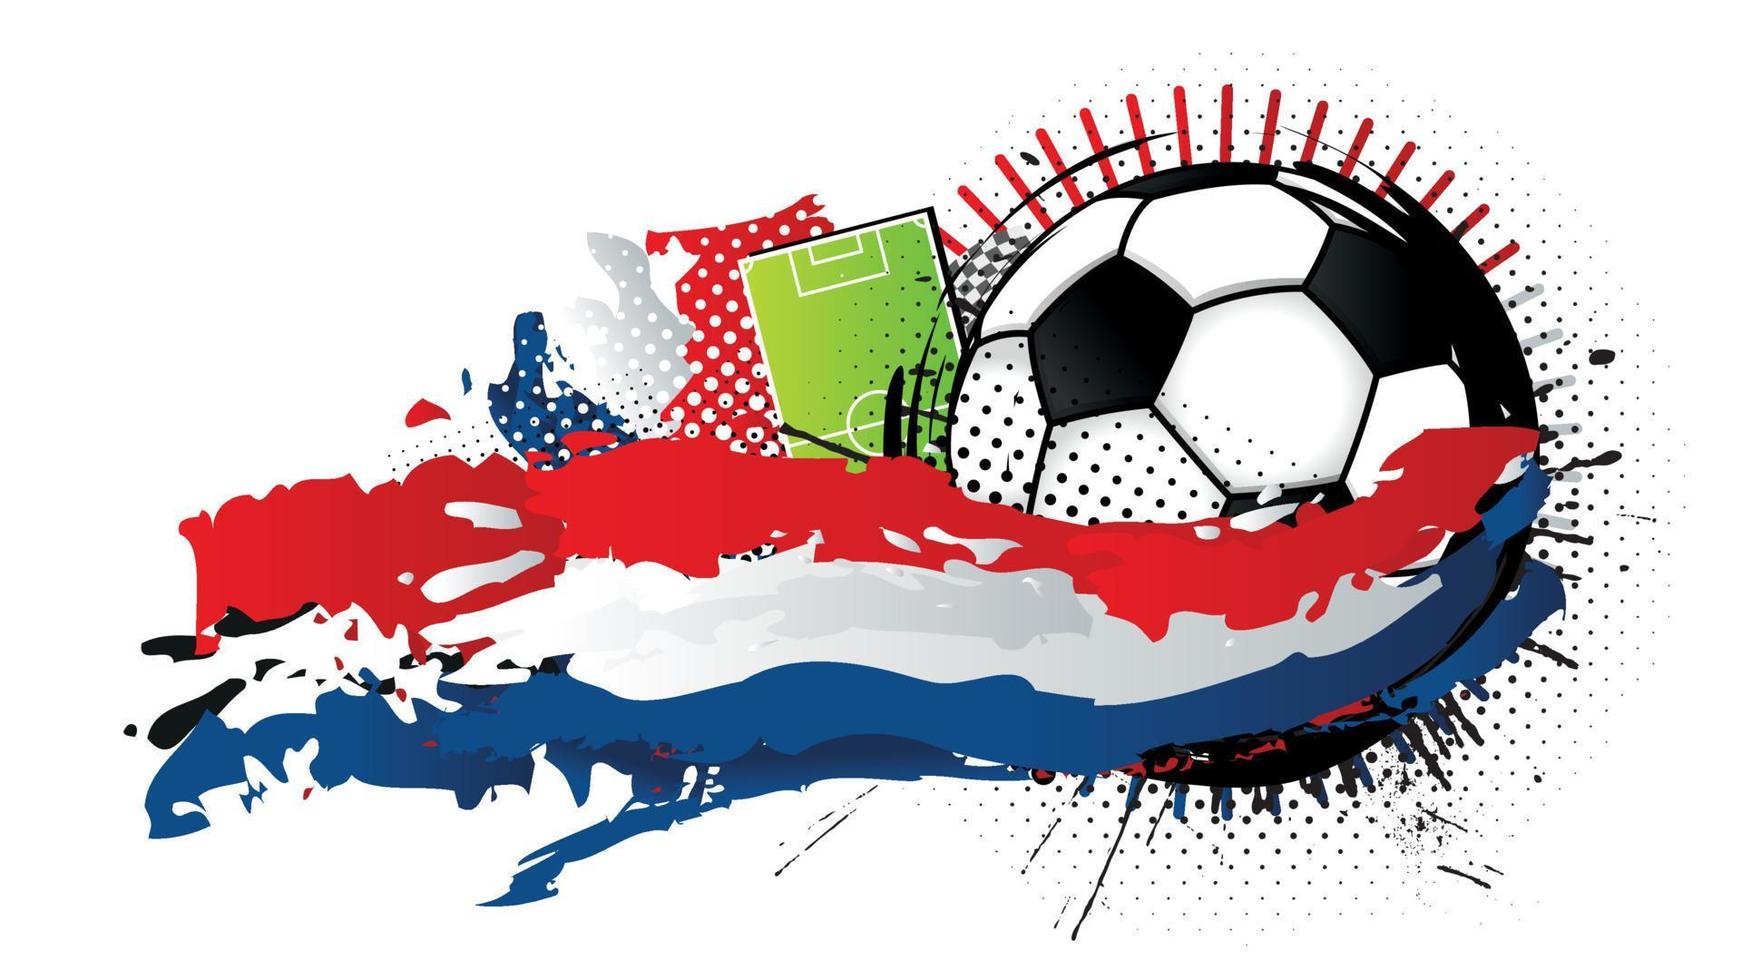 bola de futebol preta e branca cercada por manchas vermelhas, brancas e azuis formando a bandeira da Holanda com um campo de futebol ao fundo. imagem vetorial vetor